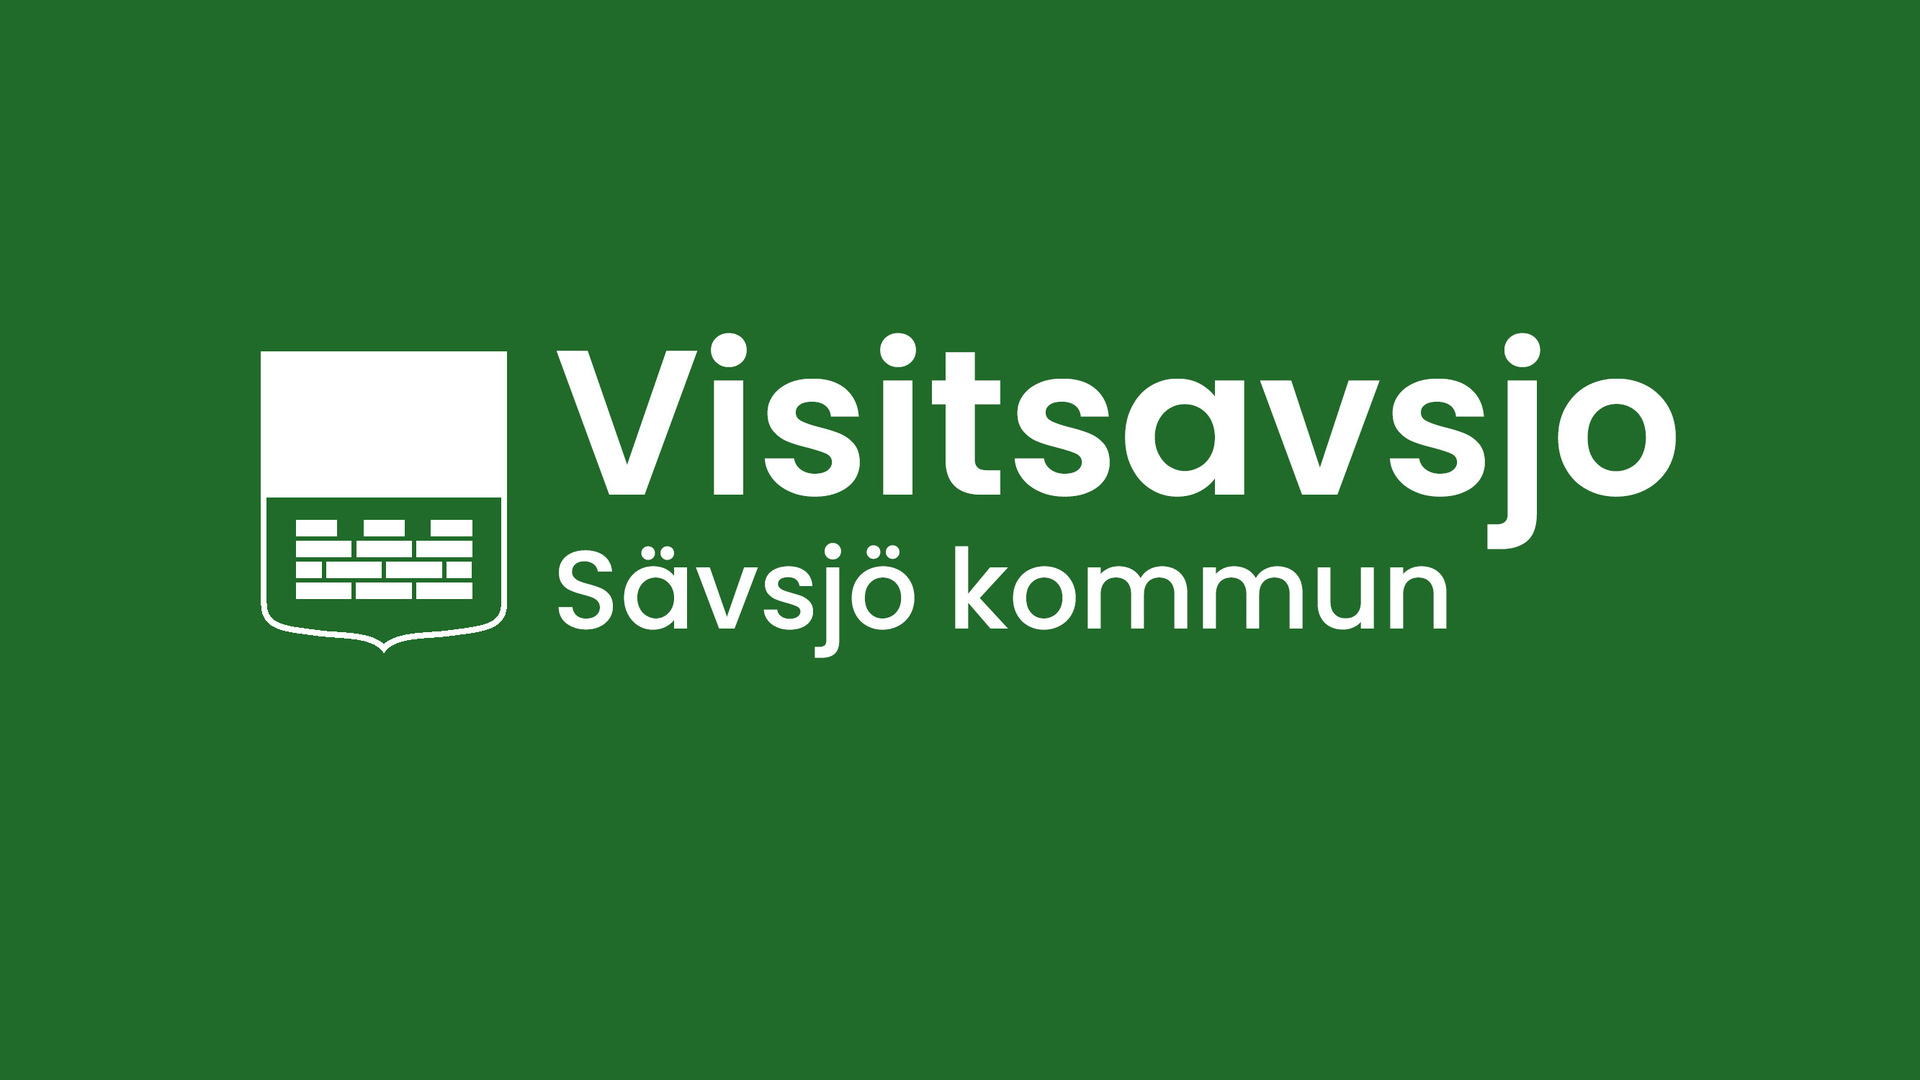 Logotyp för visitsavsjo på grön bakrund.